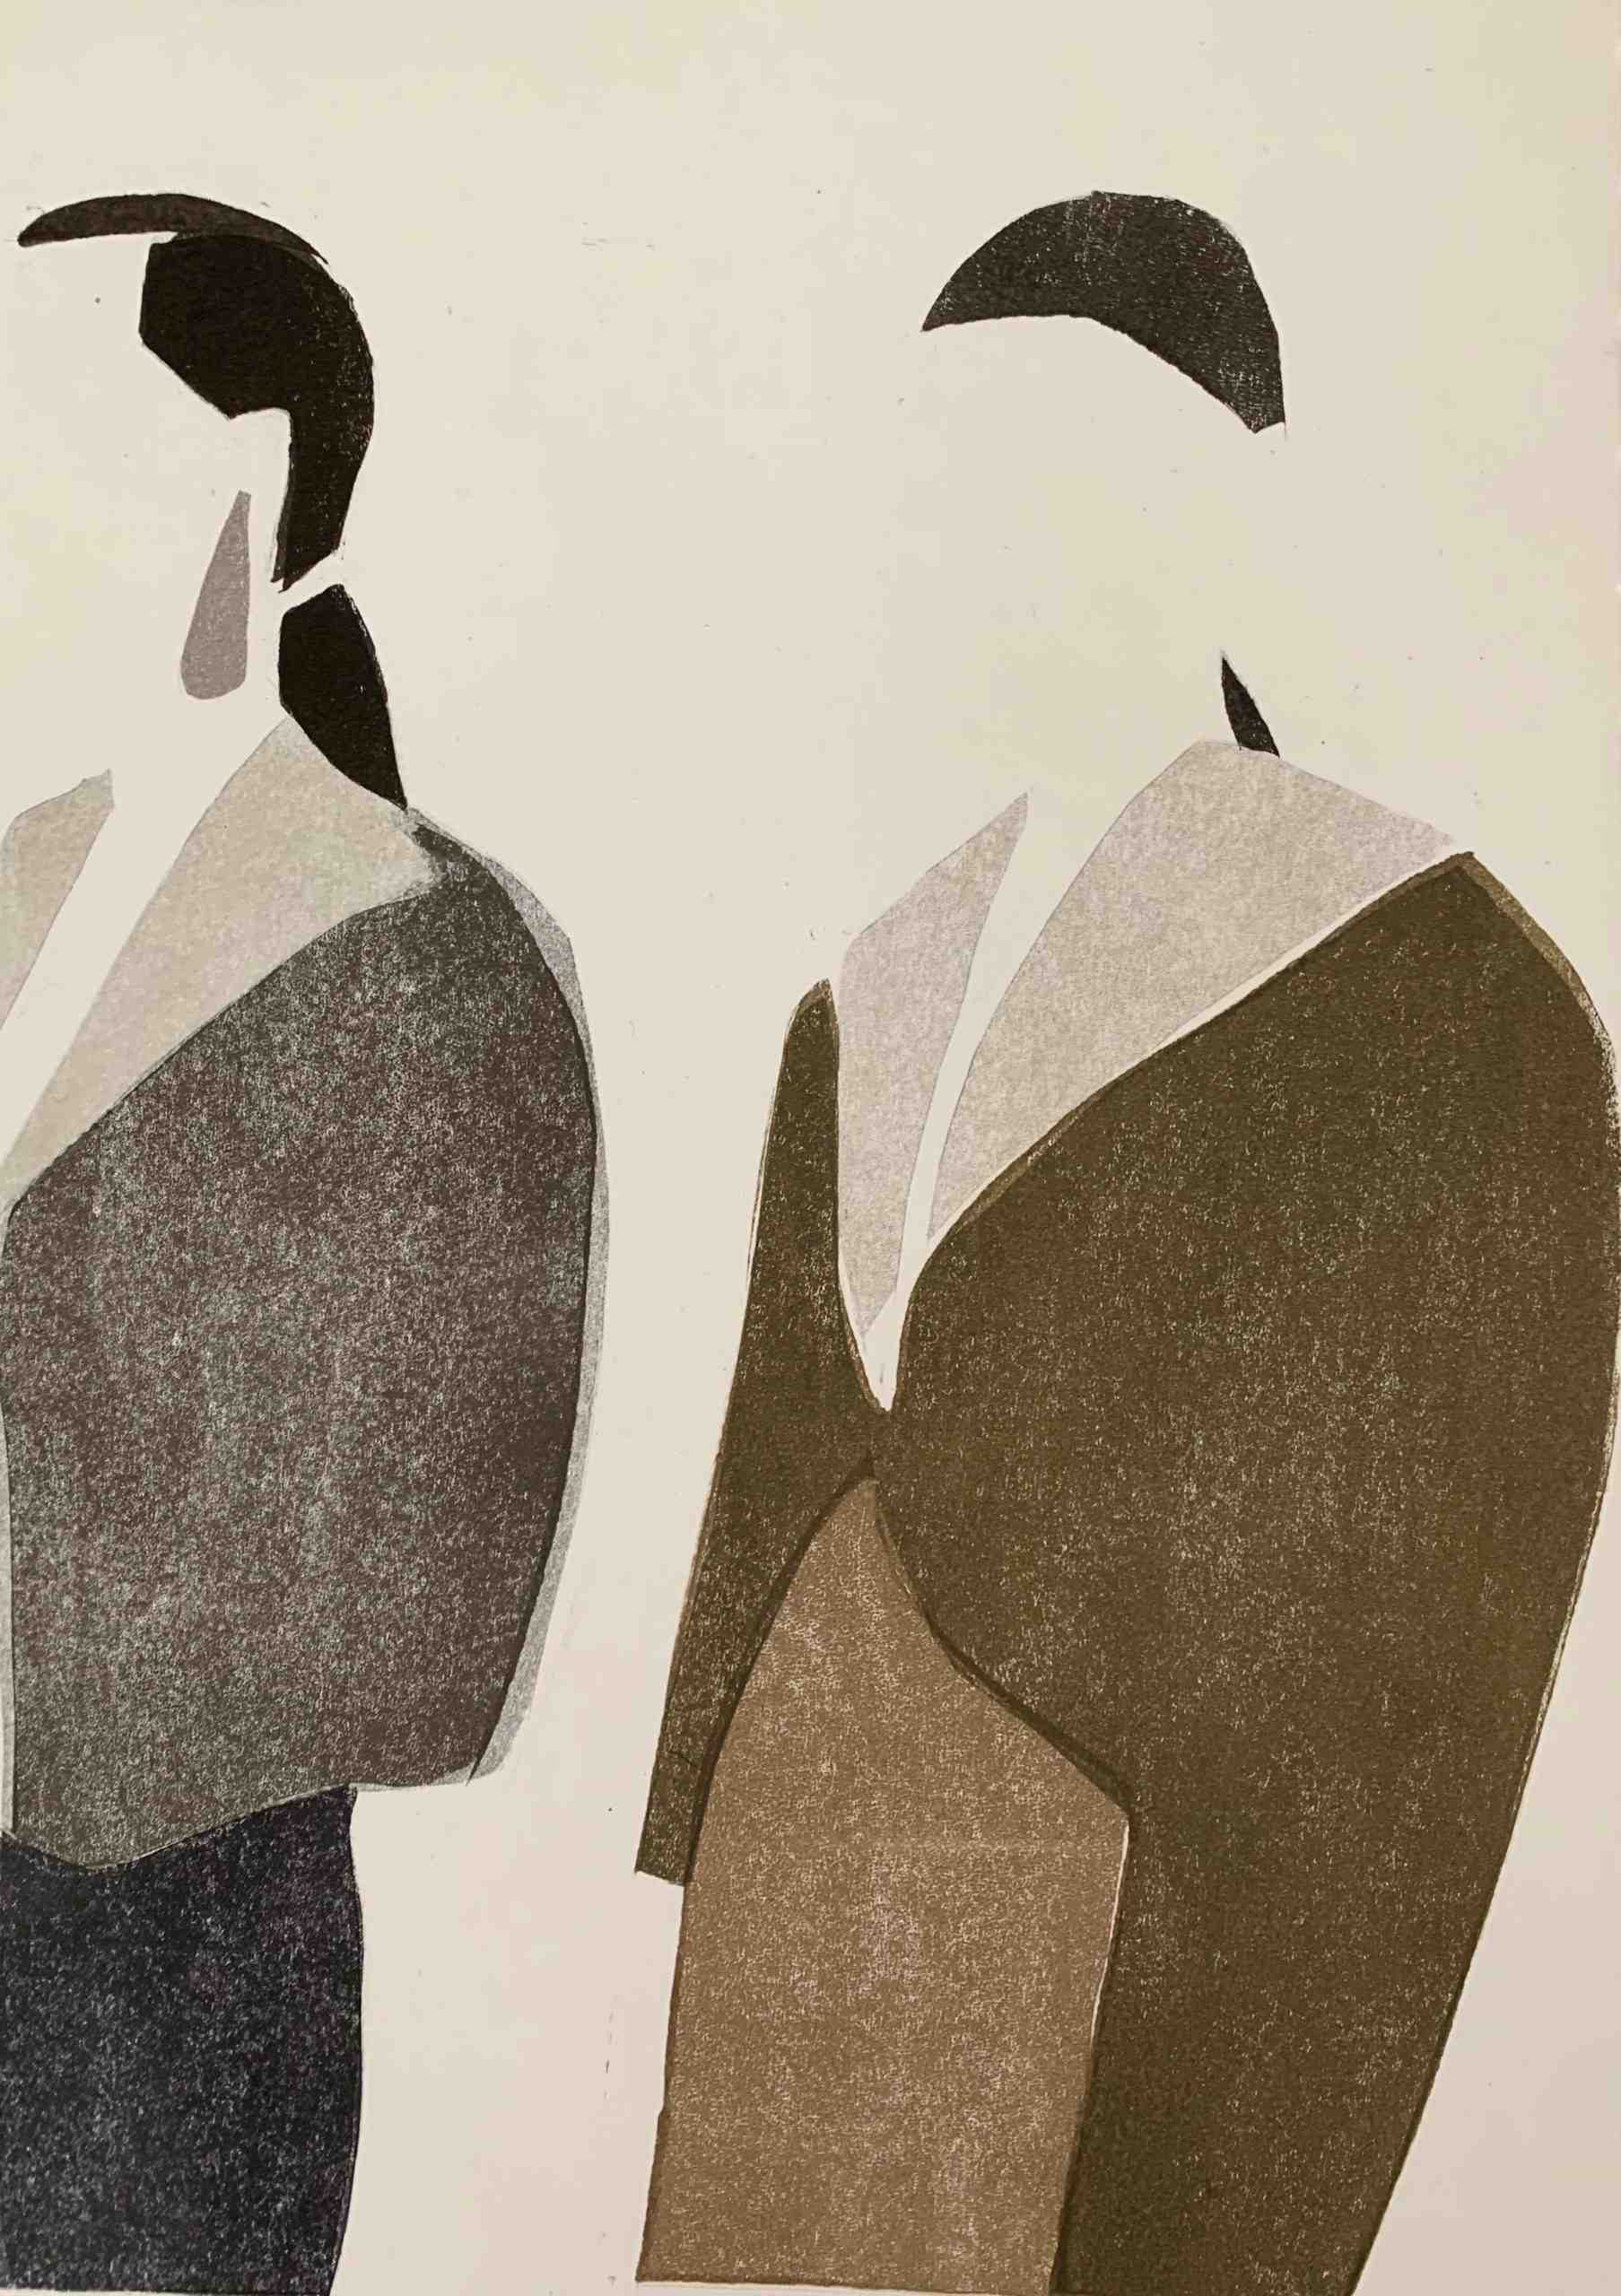 An artwork depicting two women wearing brown coats